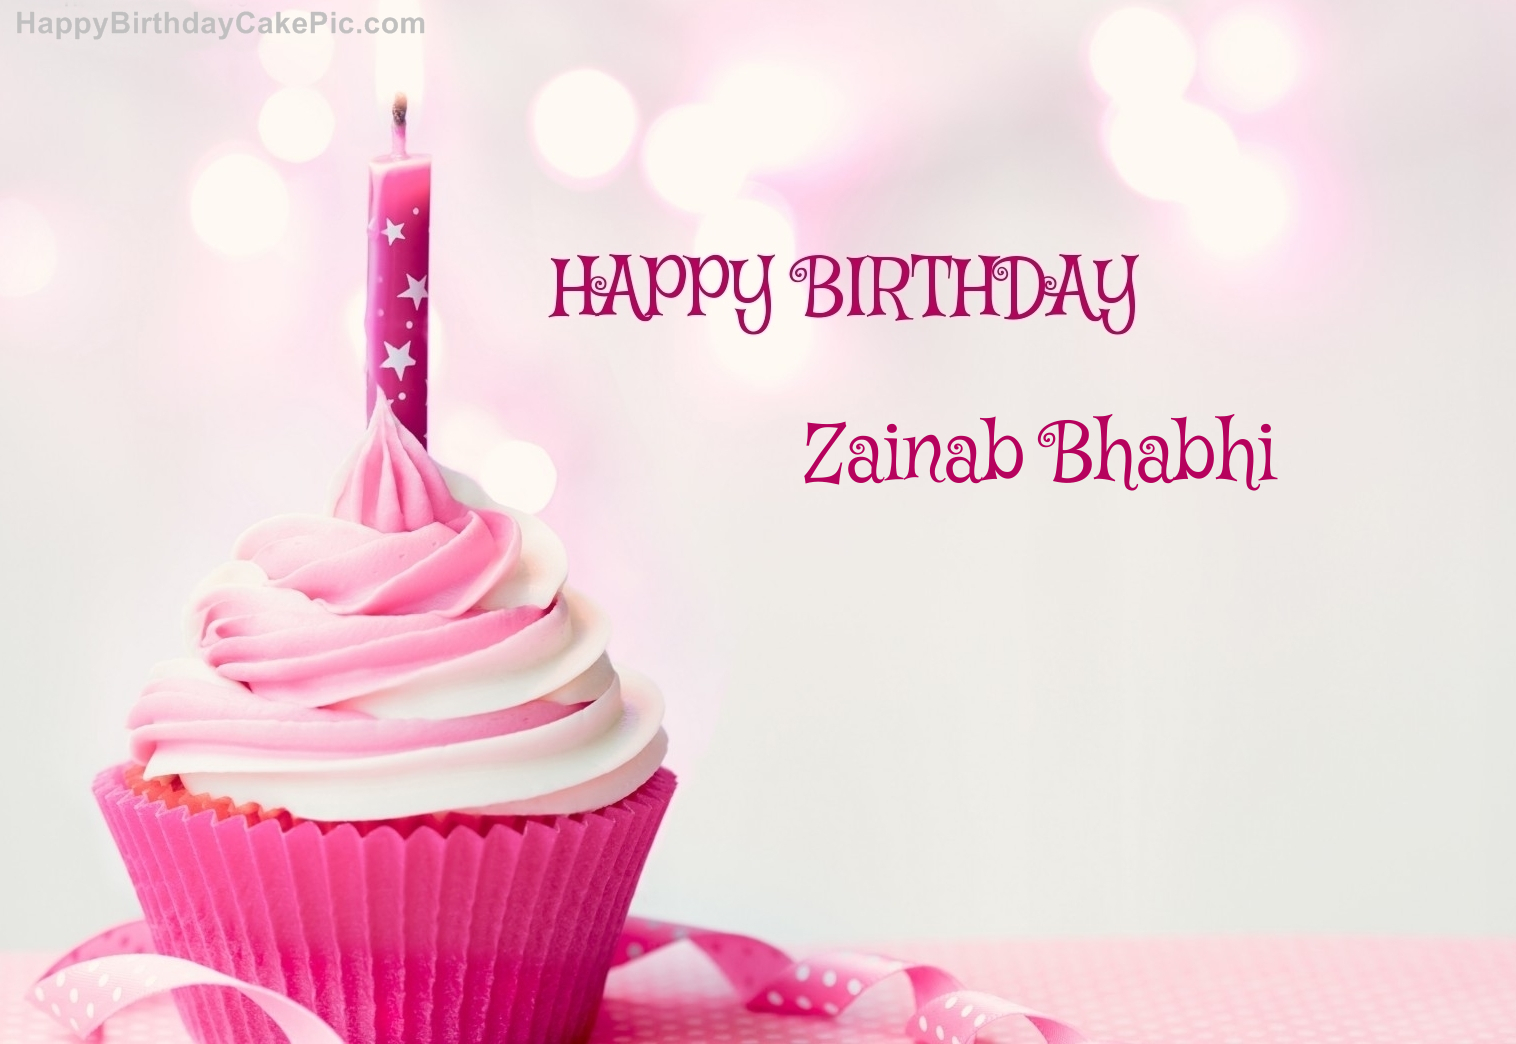 ️ Happy Birthday Cupcake Candle Pink Cake For Zainab Bhabhi